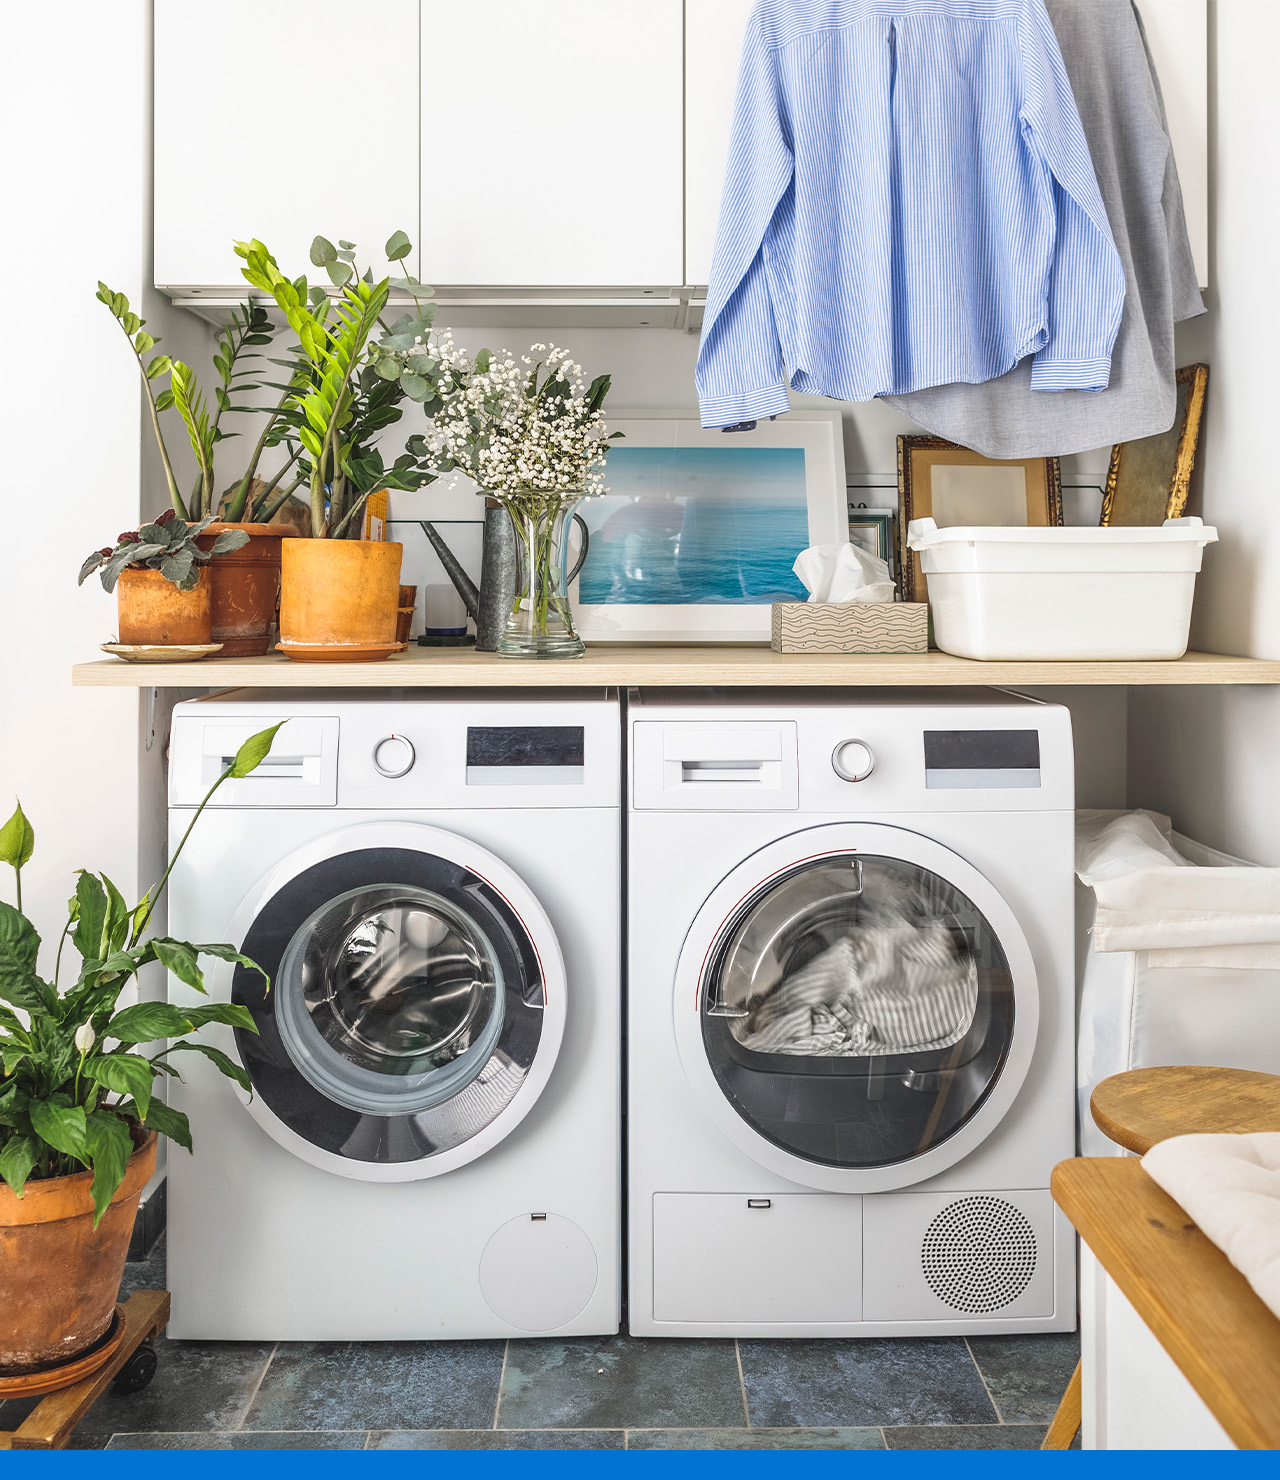 ¿Cómo quitar los pelos de la ropa en la lavadora de forma eficiente?